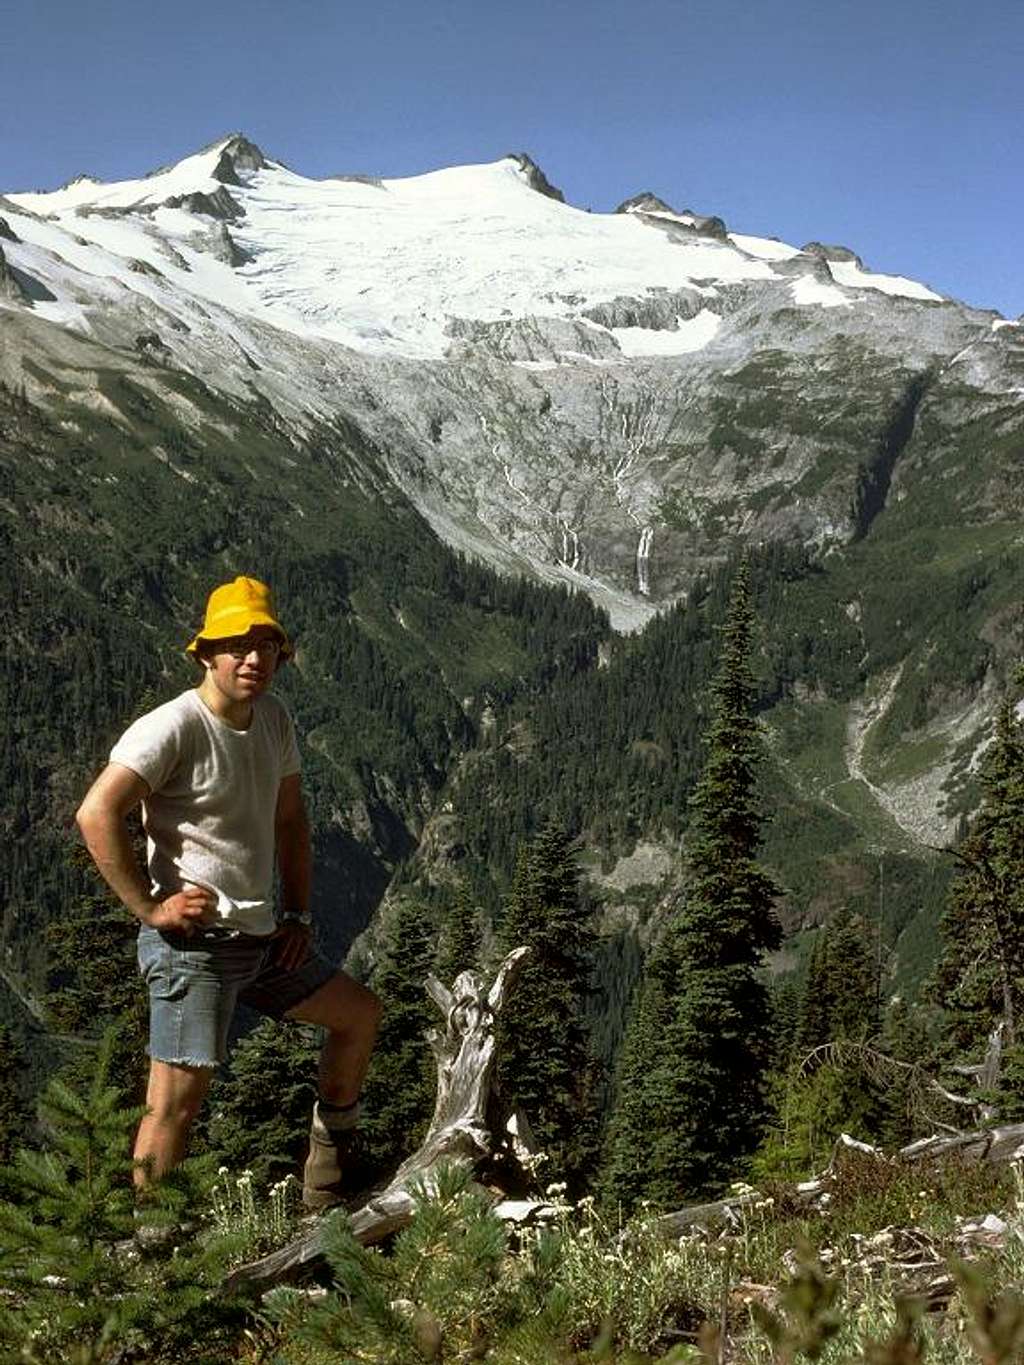 Daniel Glacier in 1977